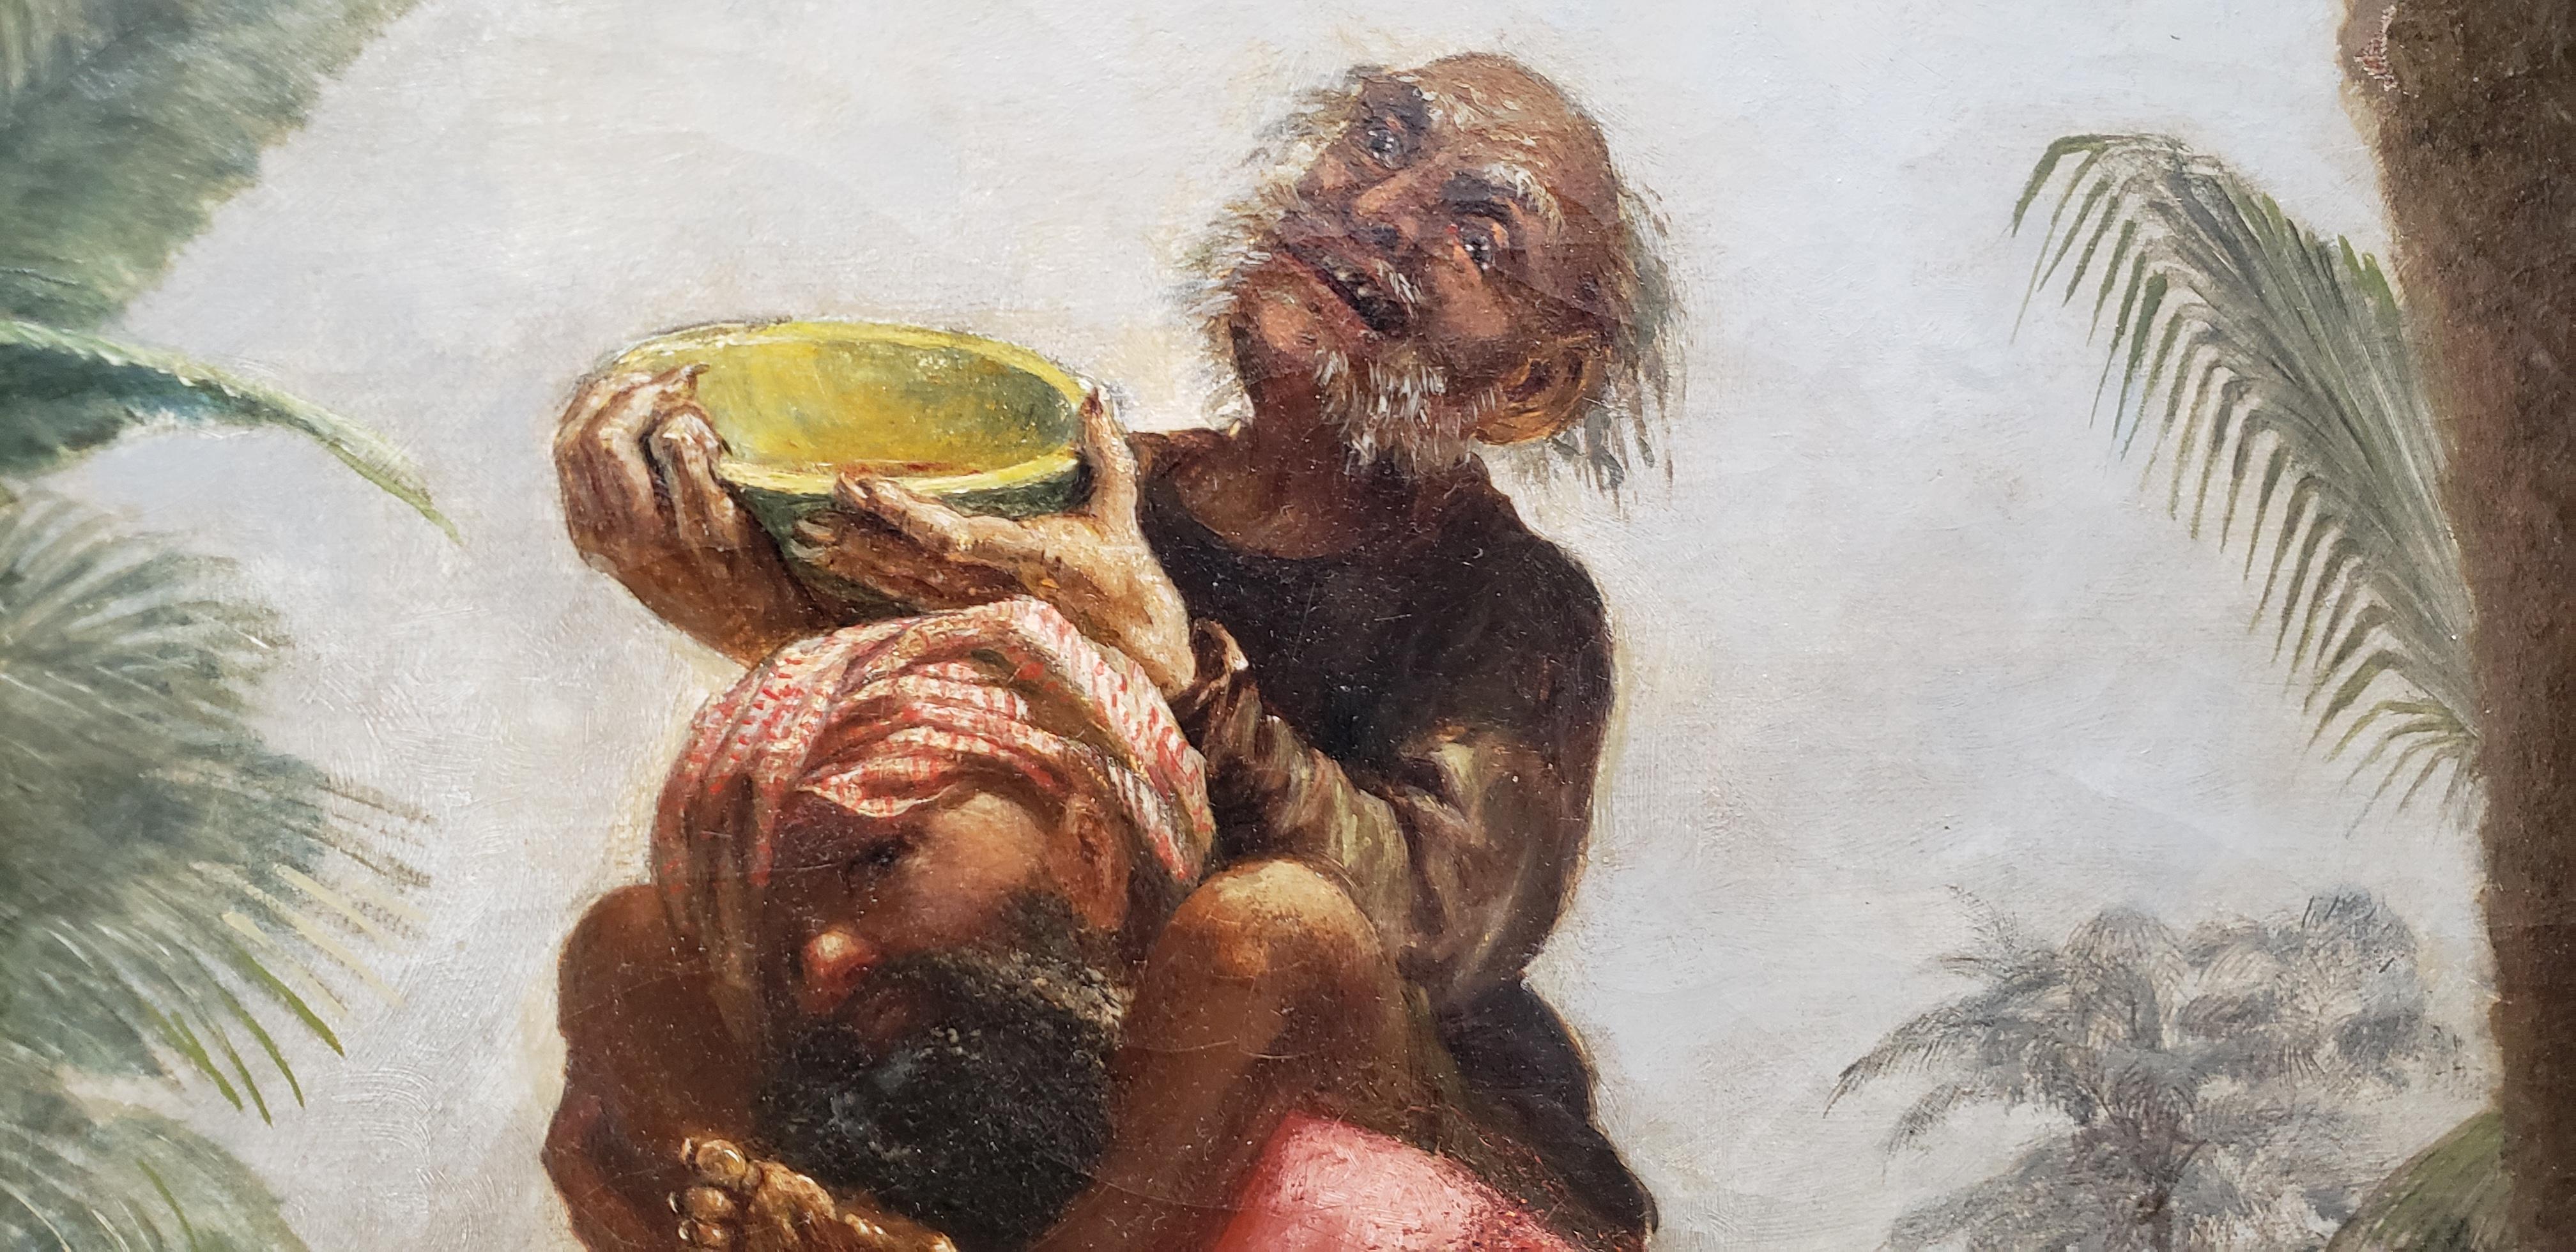 Sinbad avec le vieil homme de la mer sur son dos illustration originale peinture à l'huile, 19e siècle.

Une belle illustration à l'huile tirée des Contes des Mille et une nuits. En 1701, les 